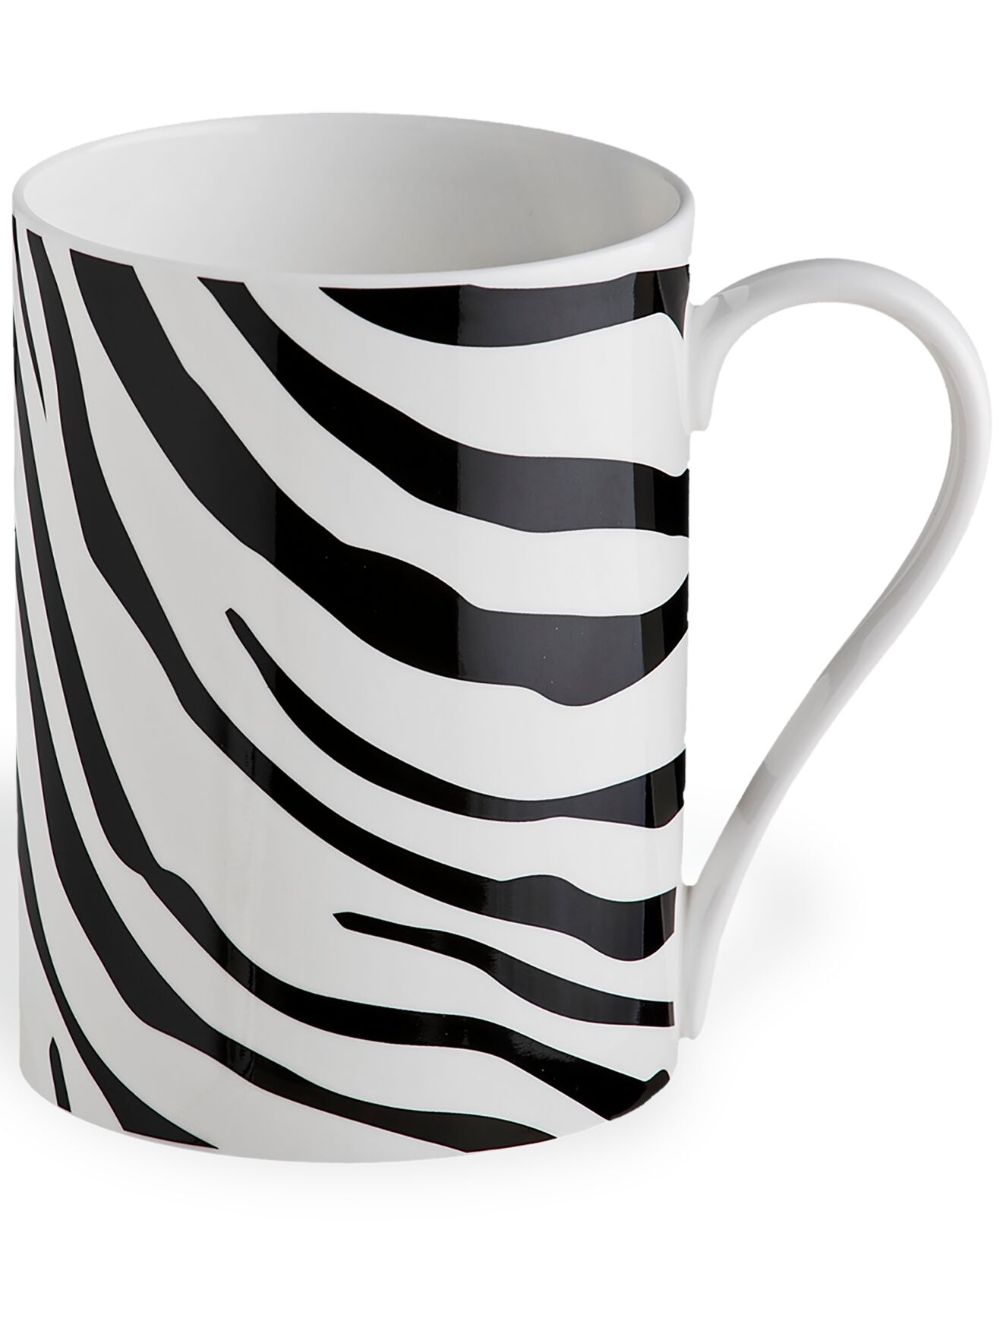 Roberto Cavalli Home Zebrage porcelain mug - White